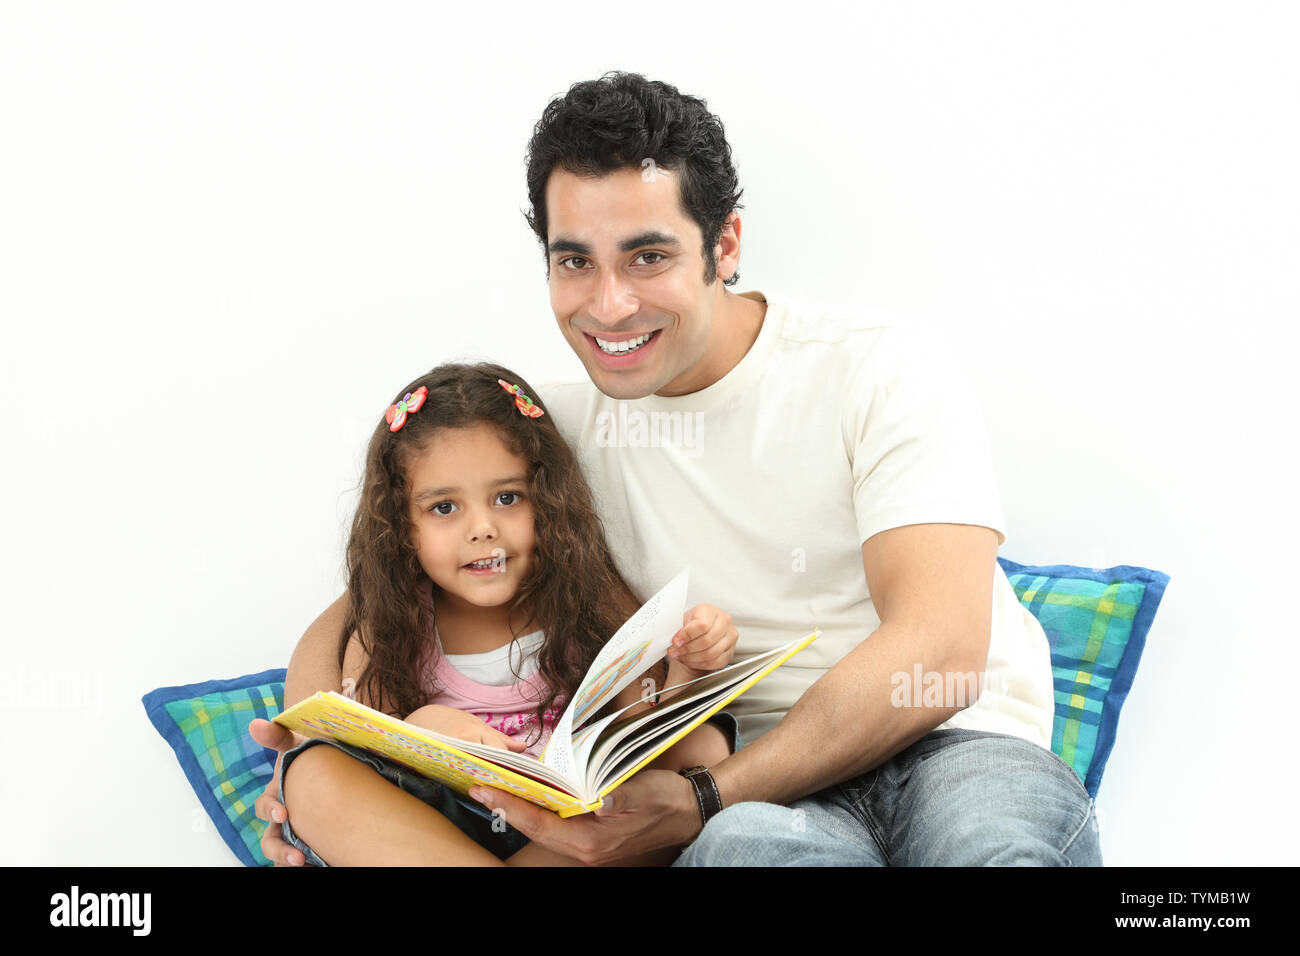 Porträt eines Mannes, der seine Tochter unterrichtet Stockfoto